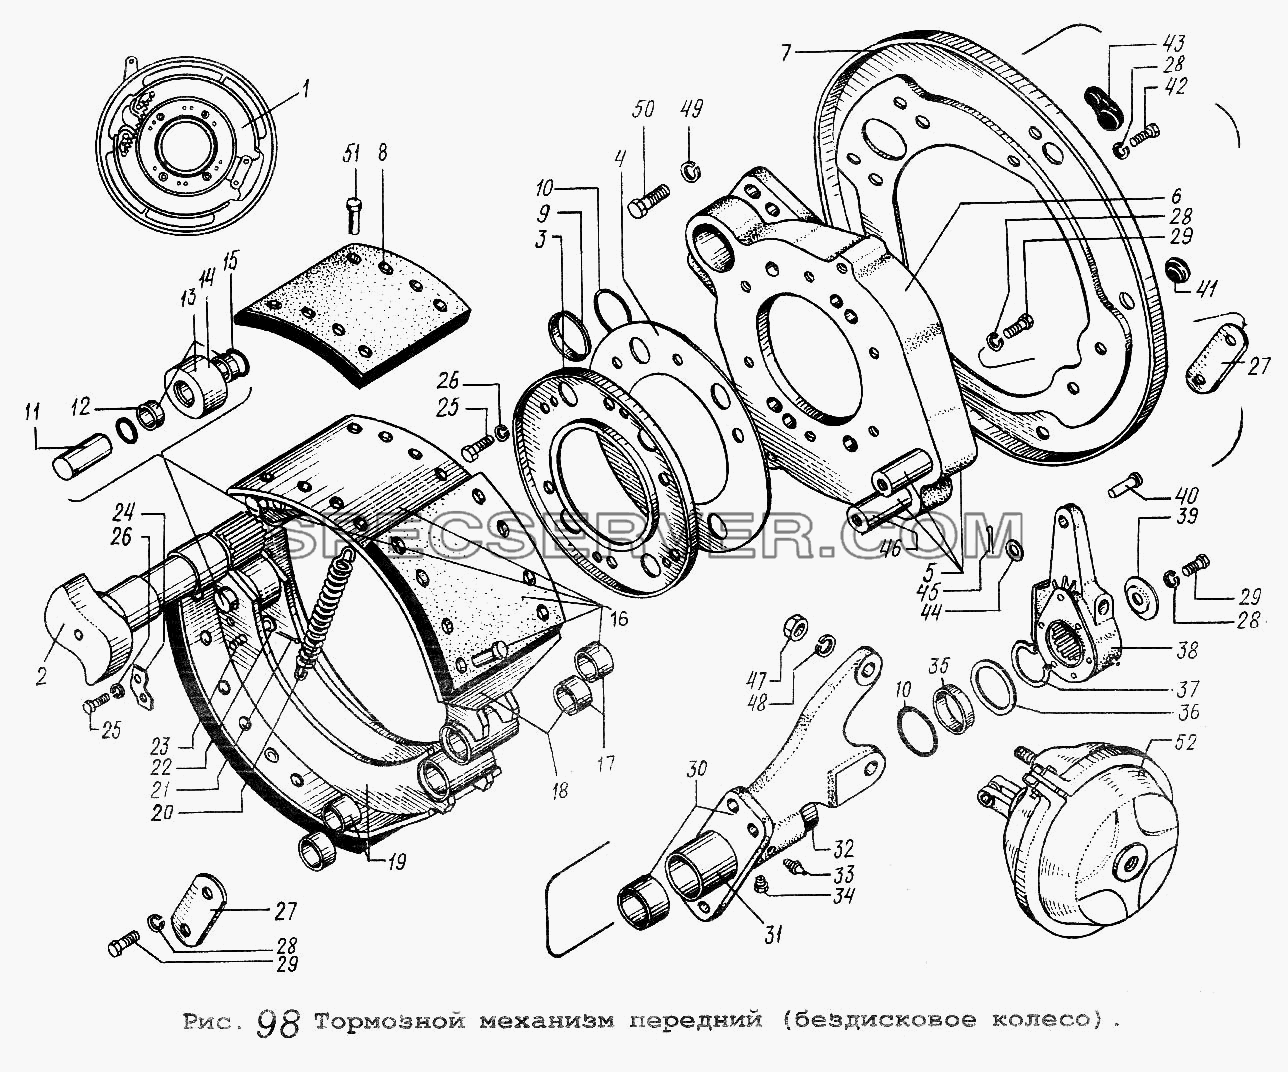 Тормозной механизм передний (бездисковое колесо) для МАЗ-5337 (список запасных частей)